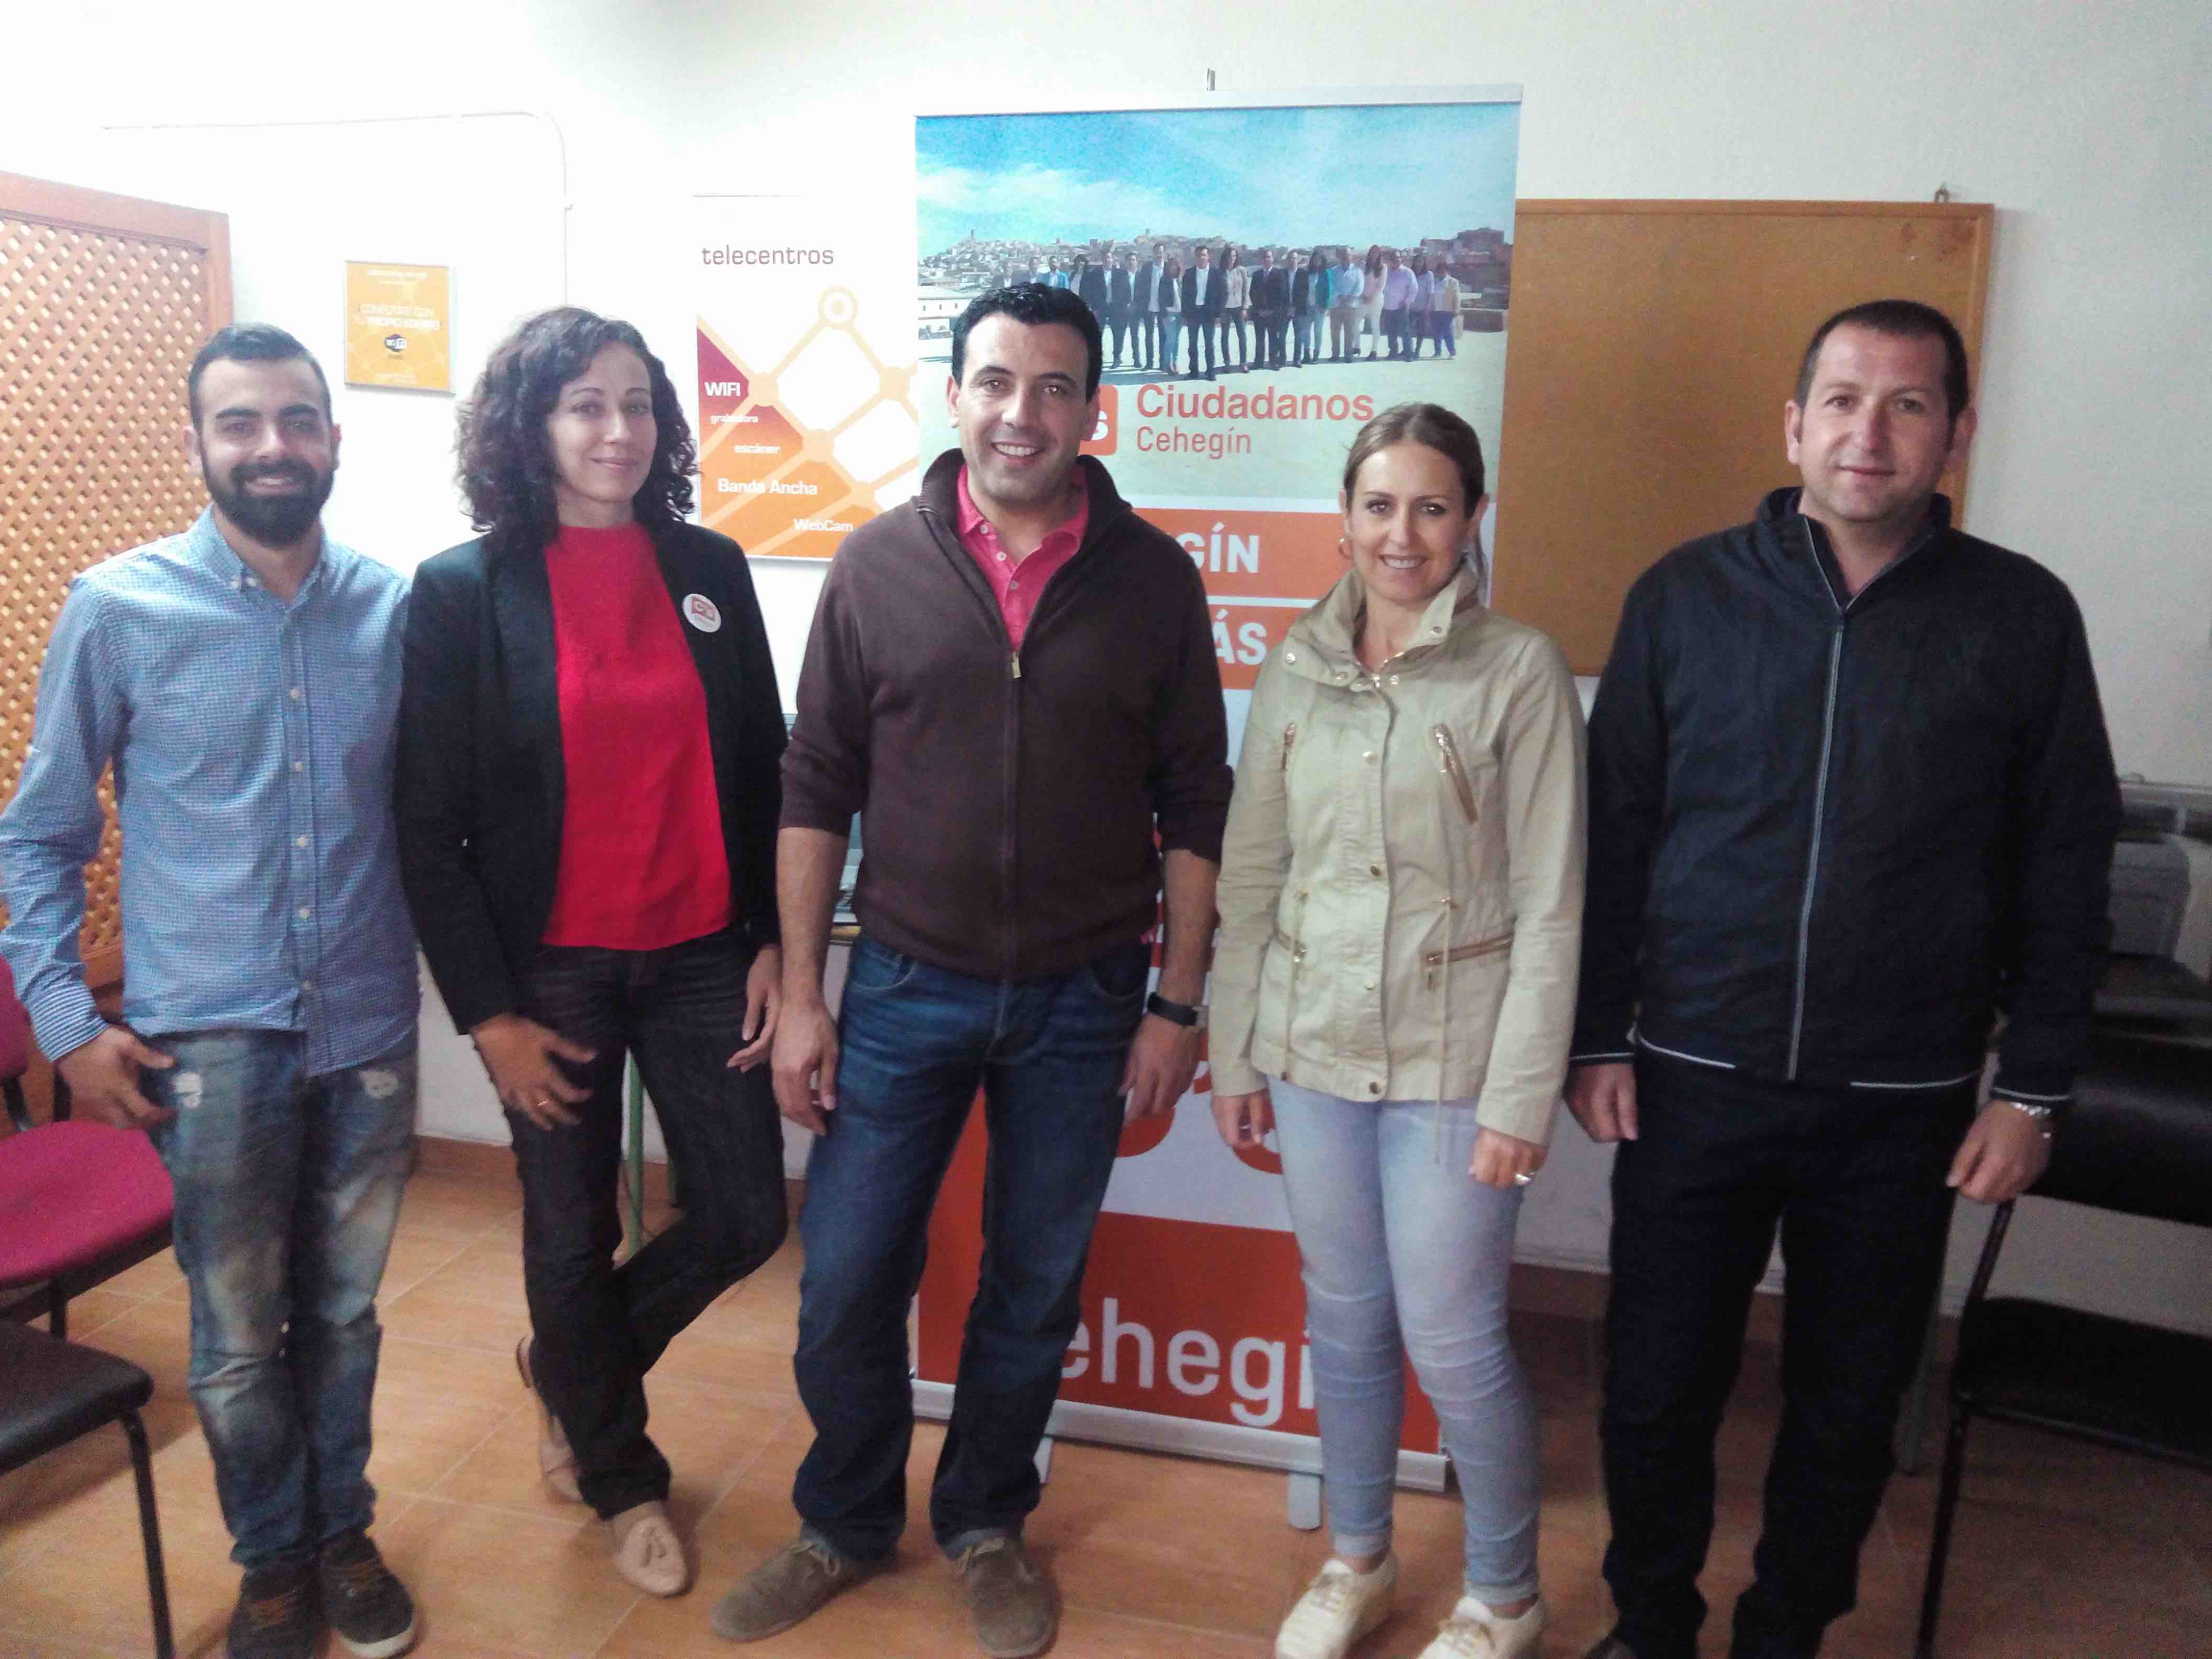 Ciudadanos Cehegín presenta sus medidas sobre cultura y juventud